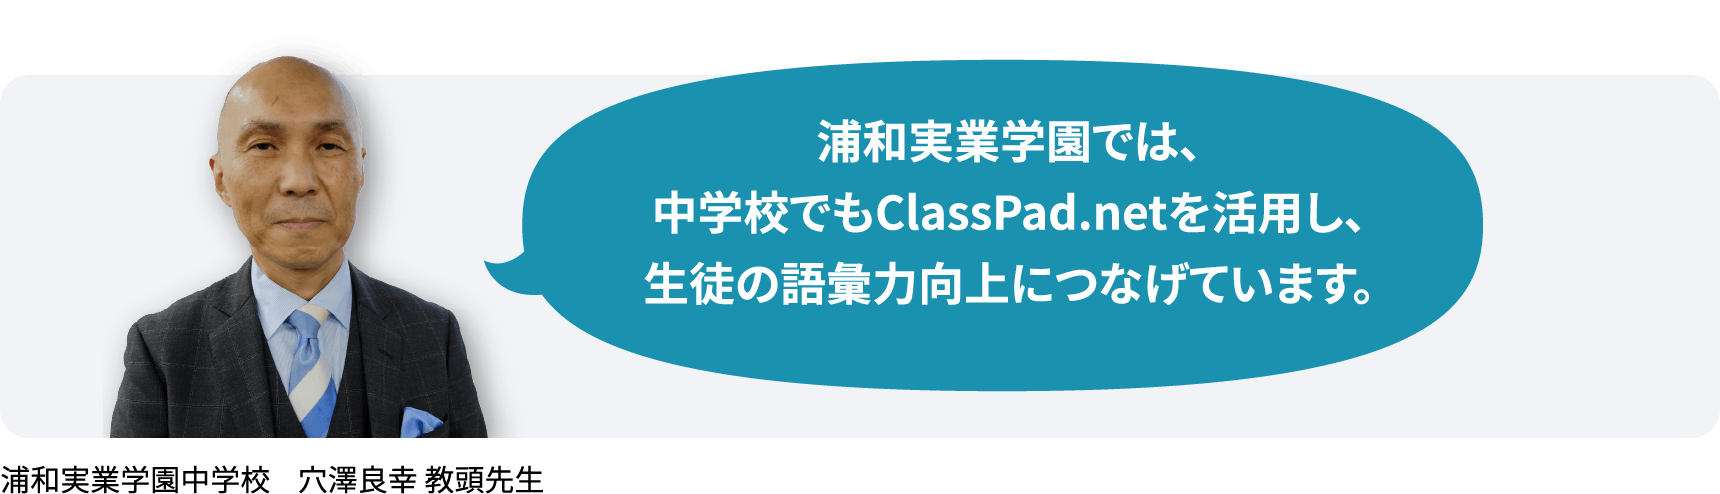 浦和実業学園では、 中学校でもClassPad.netを活用し、 生徒の語彙力向上につなげています。浦和実業学園中学校　穴澤良幸 教頭先生